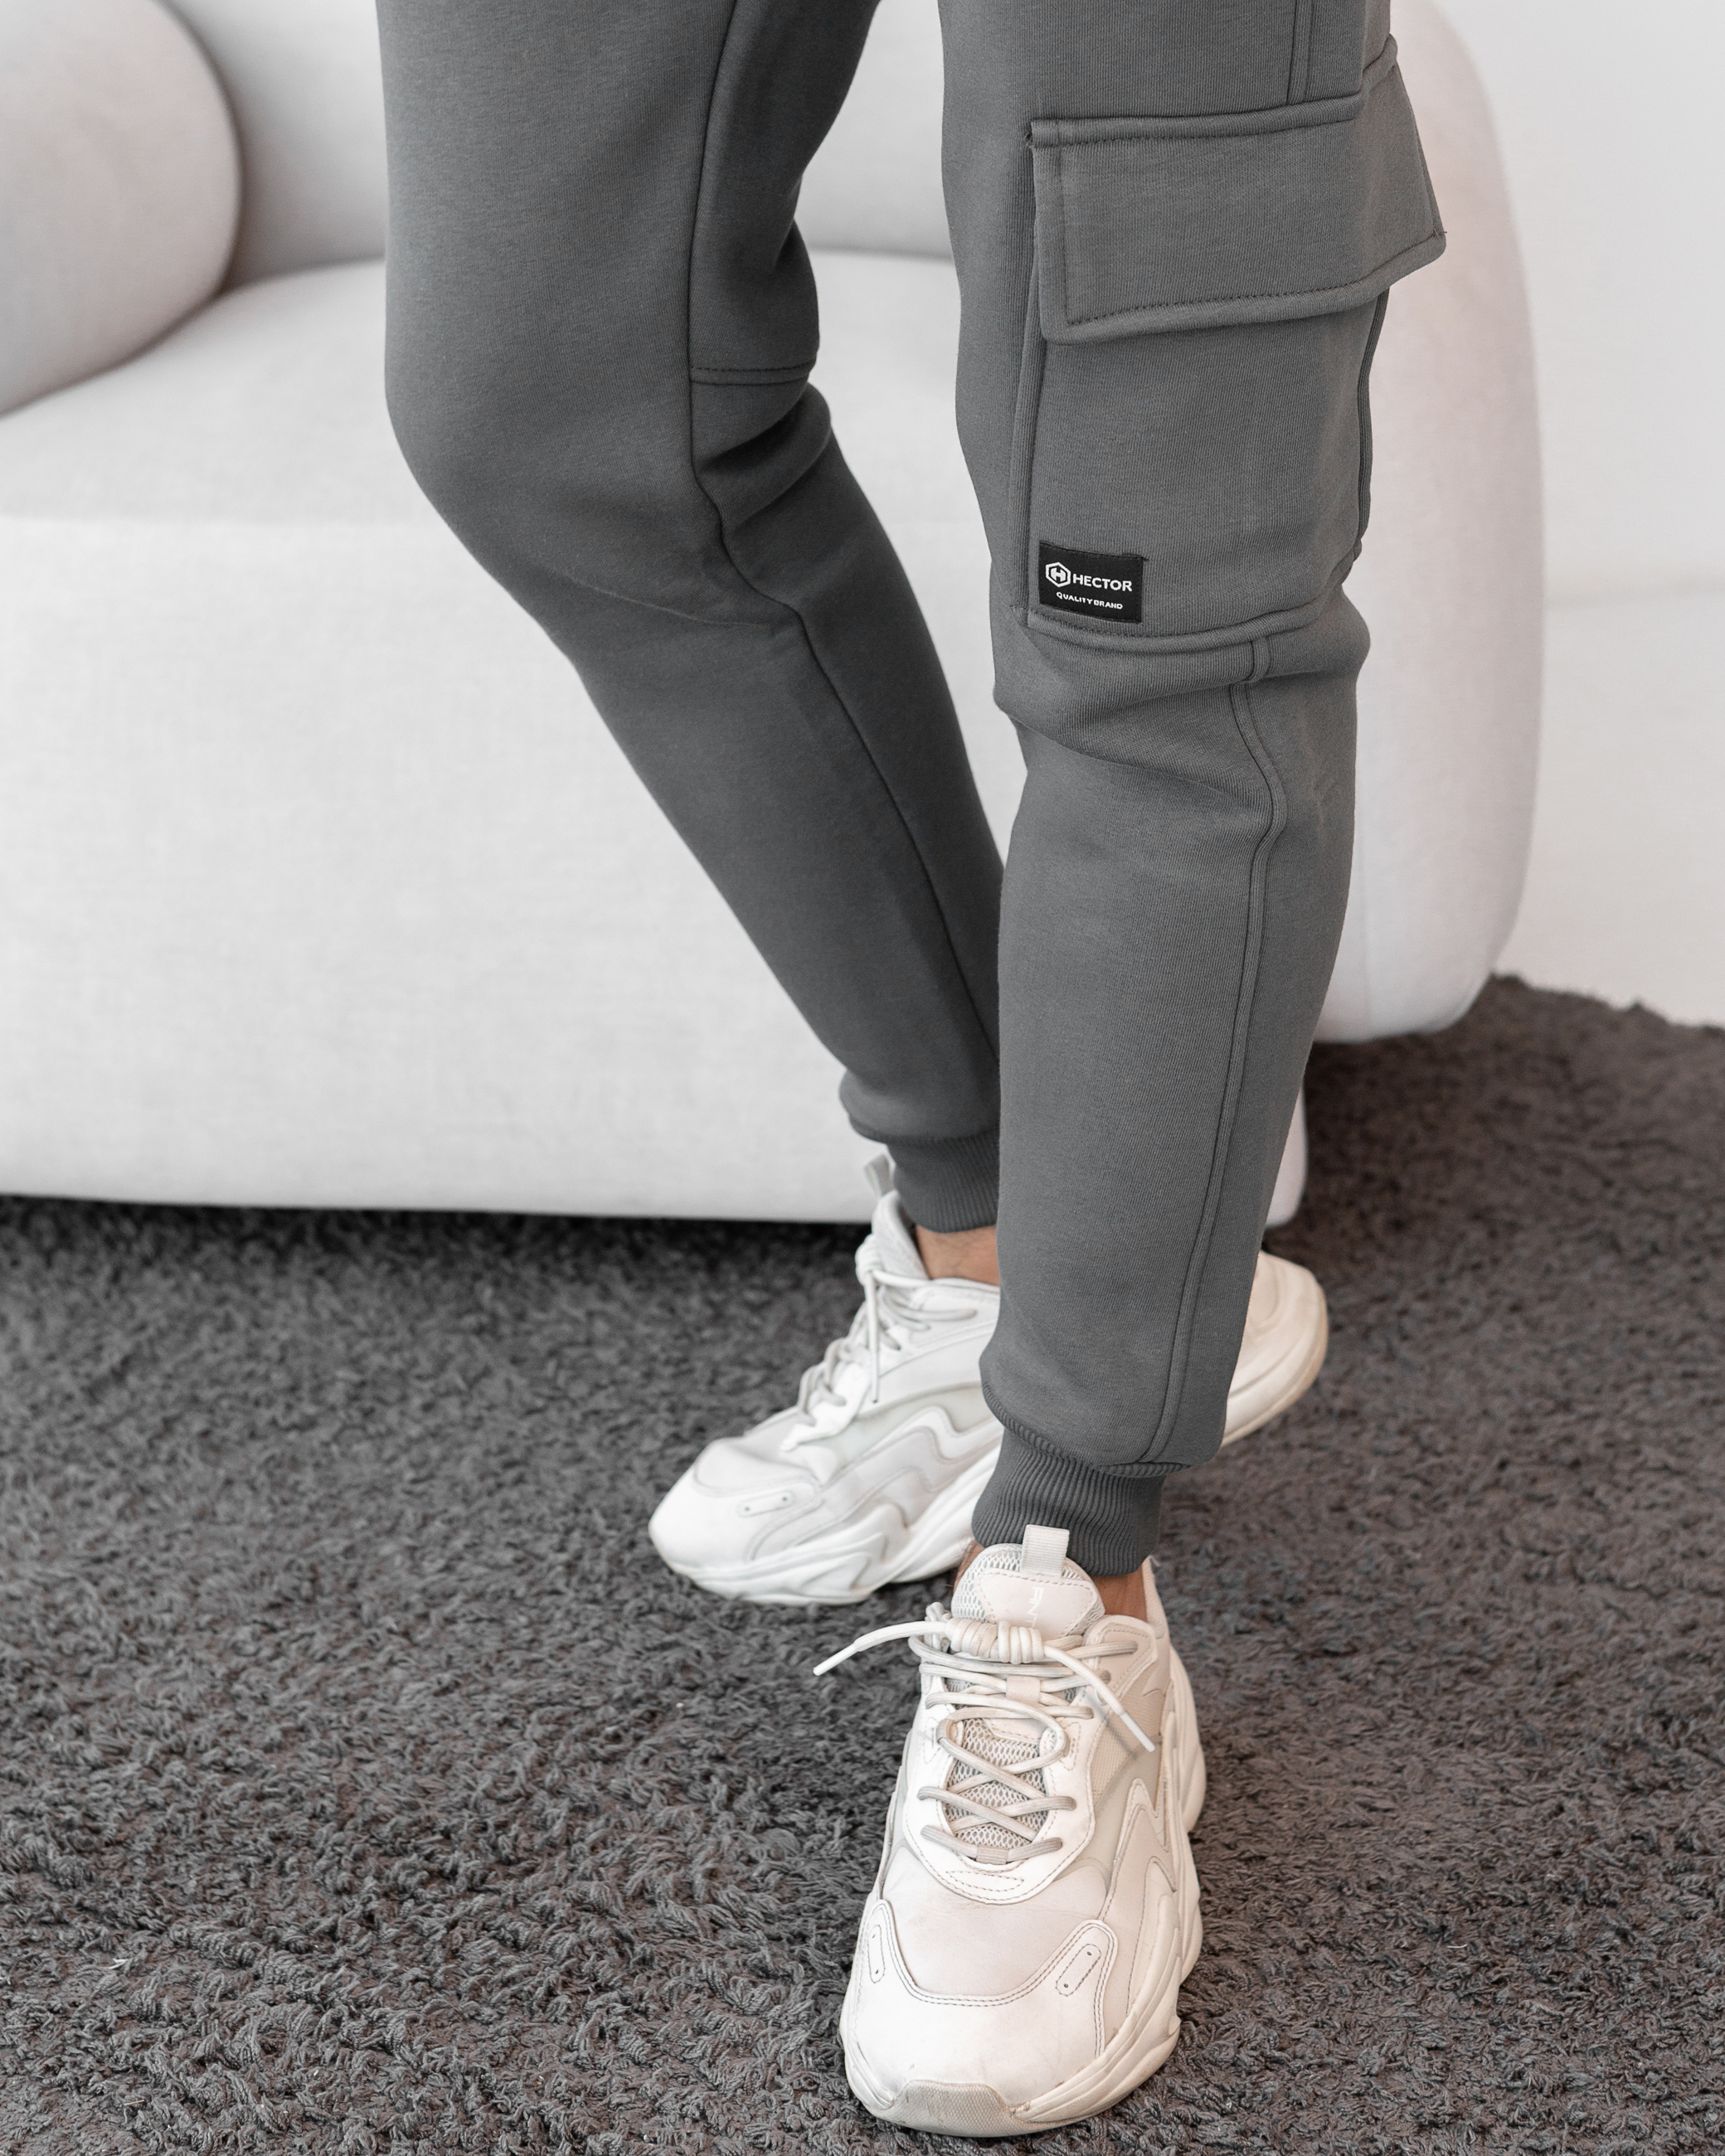 Теплые мужские спортивные штаны с накладным карманом hector 30663